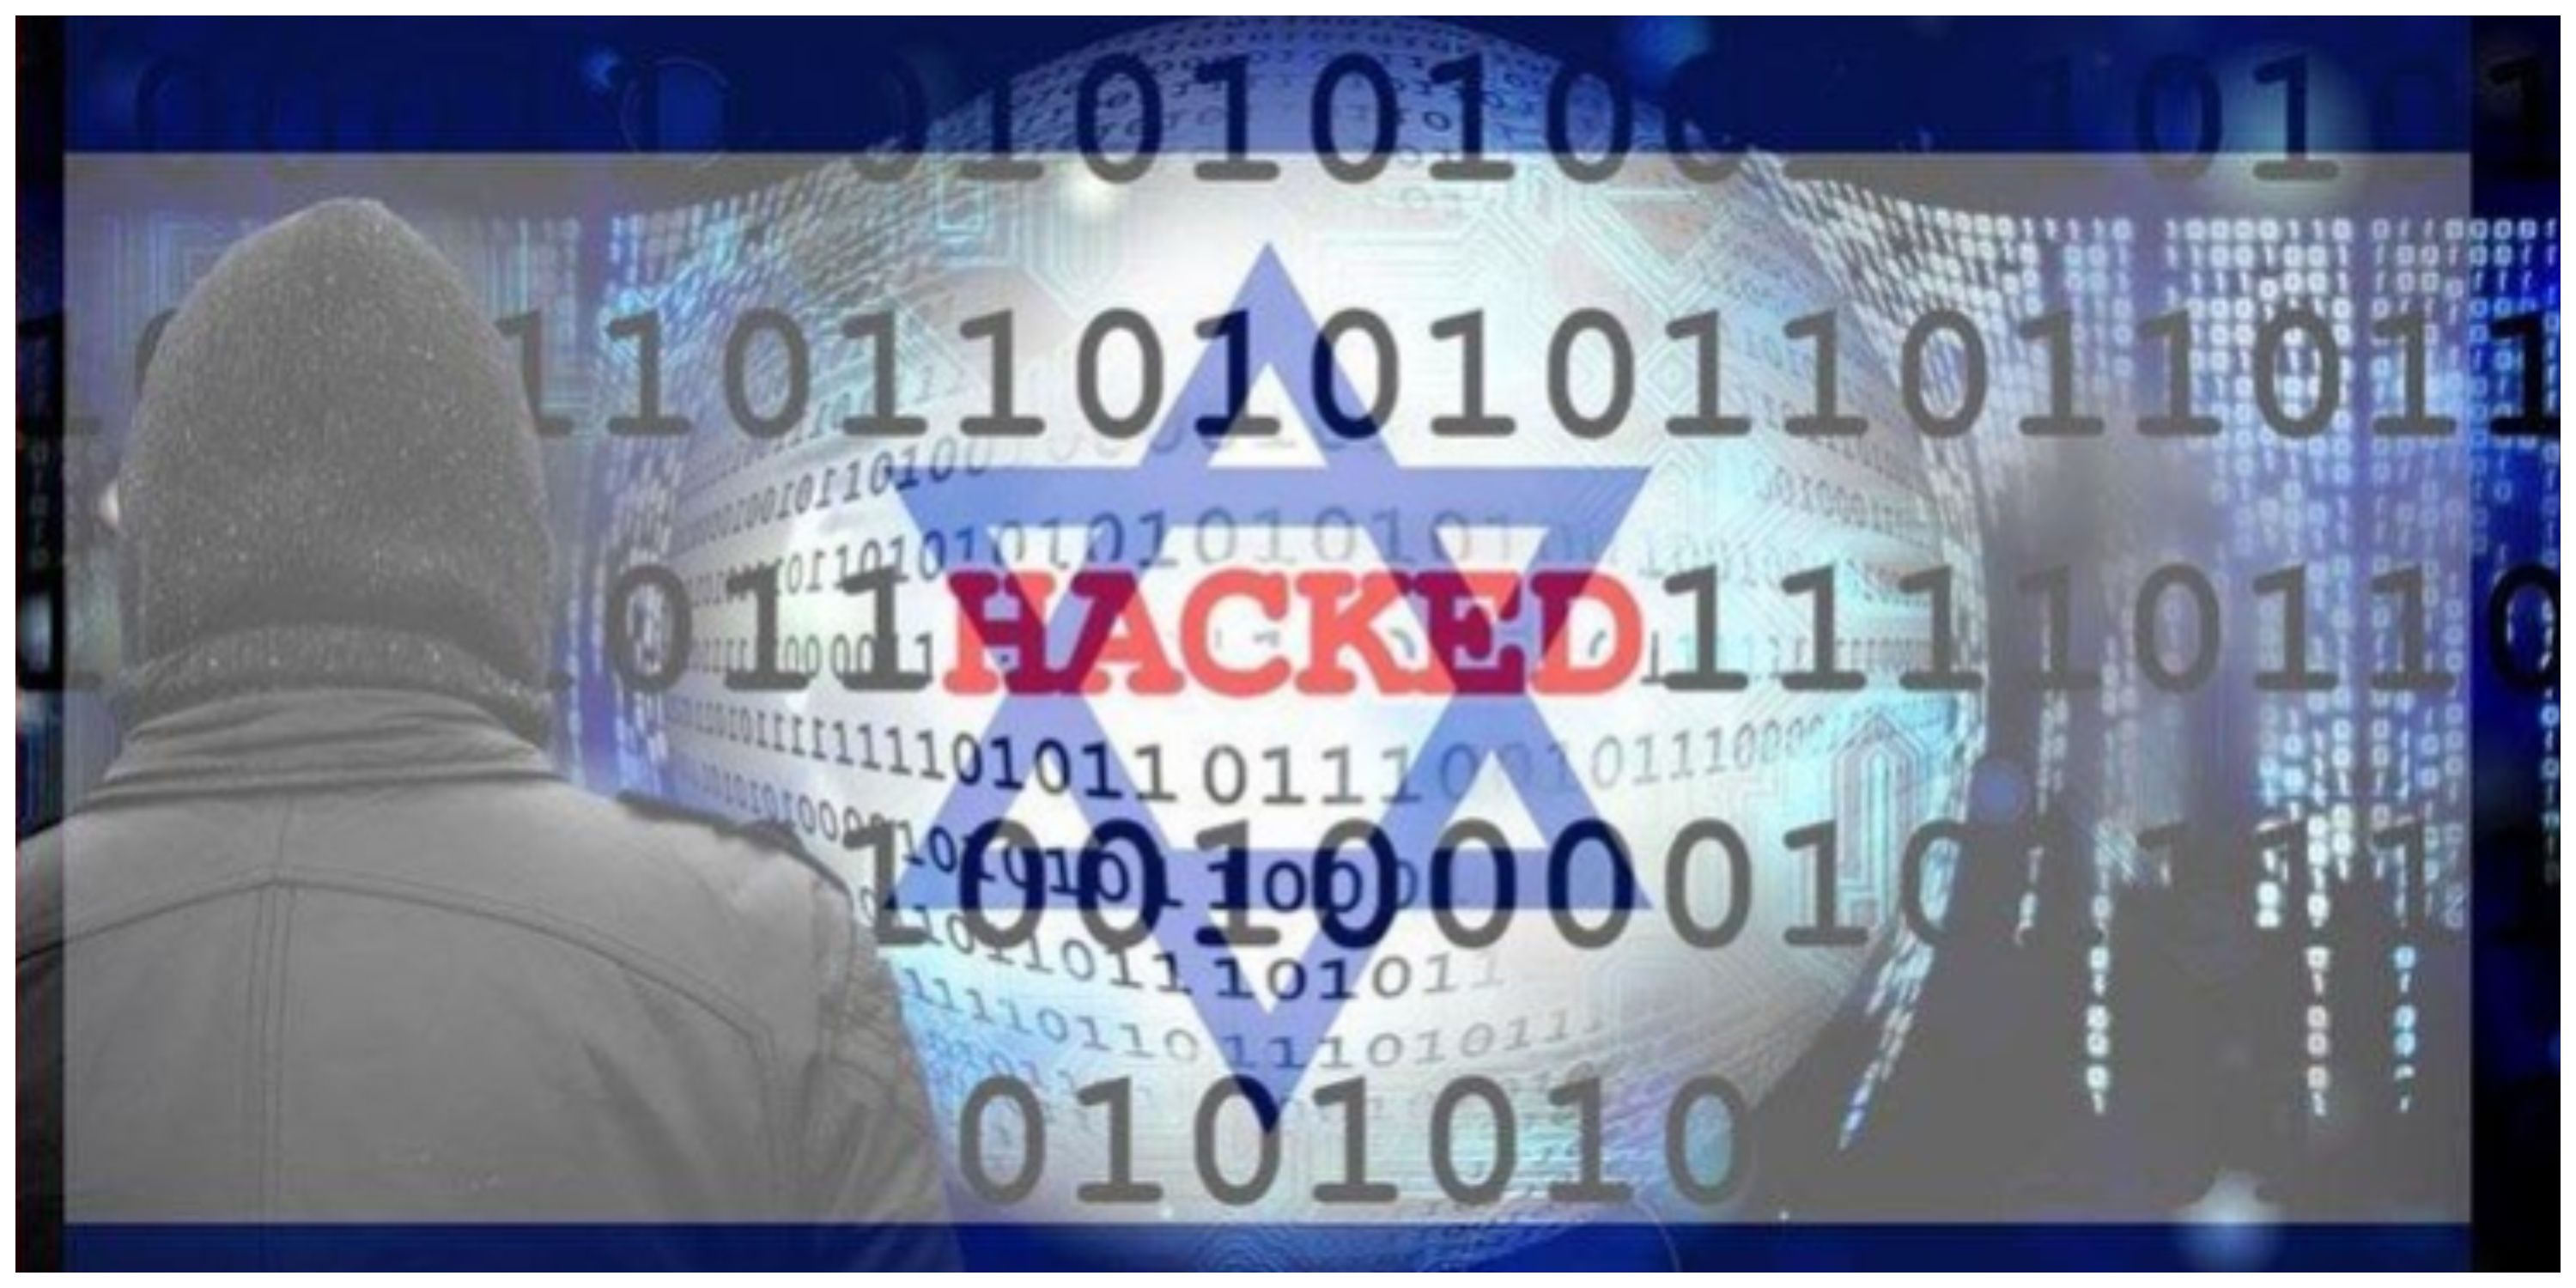  سایت نیروی هوایی اسرائیل هک شد